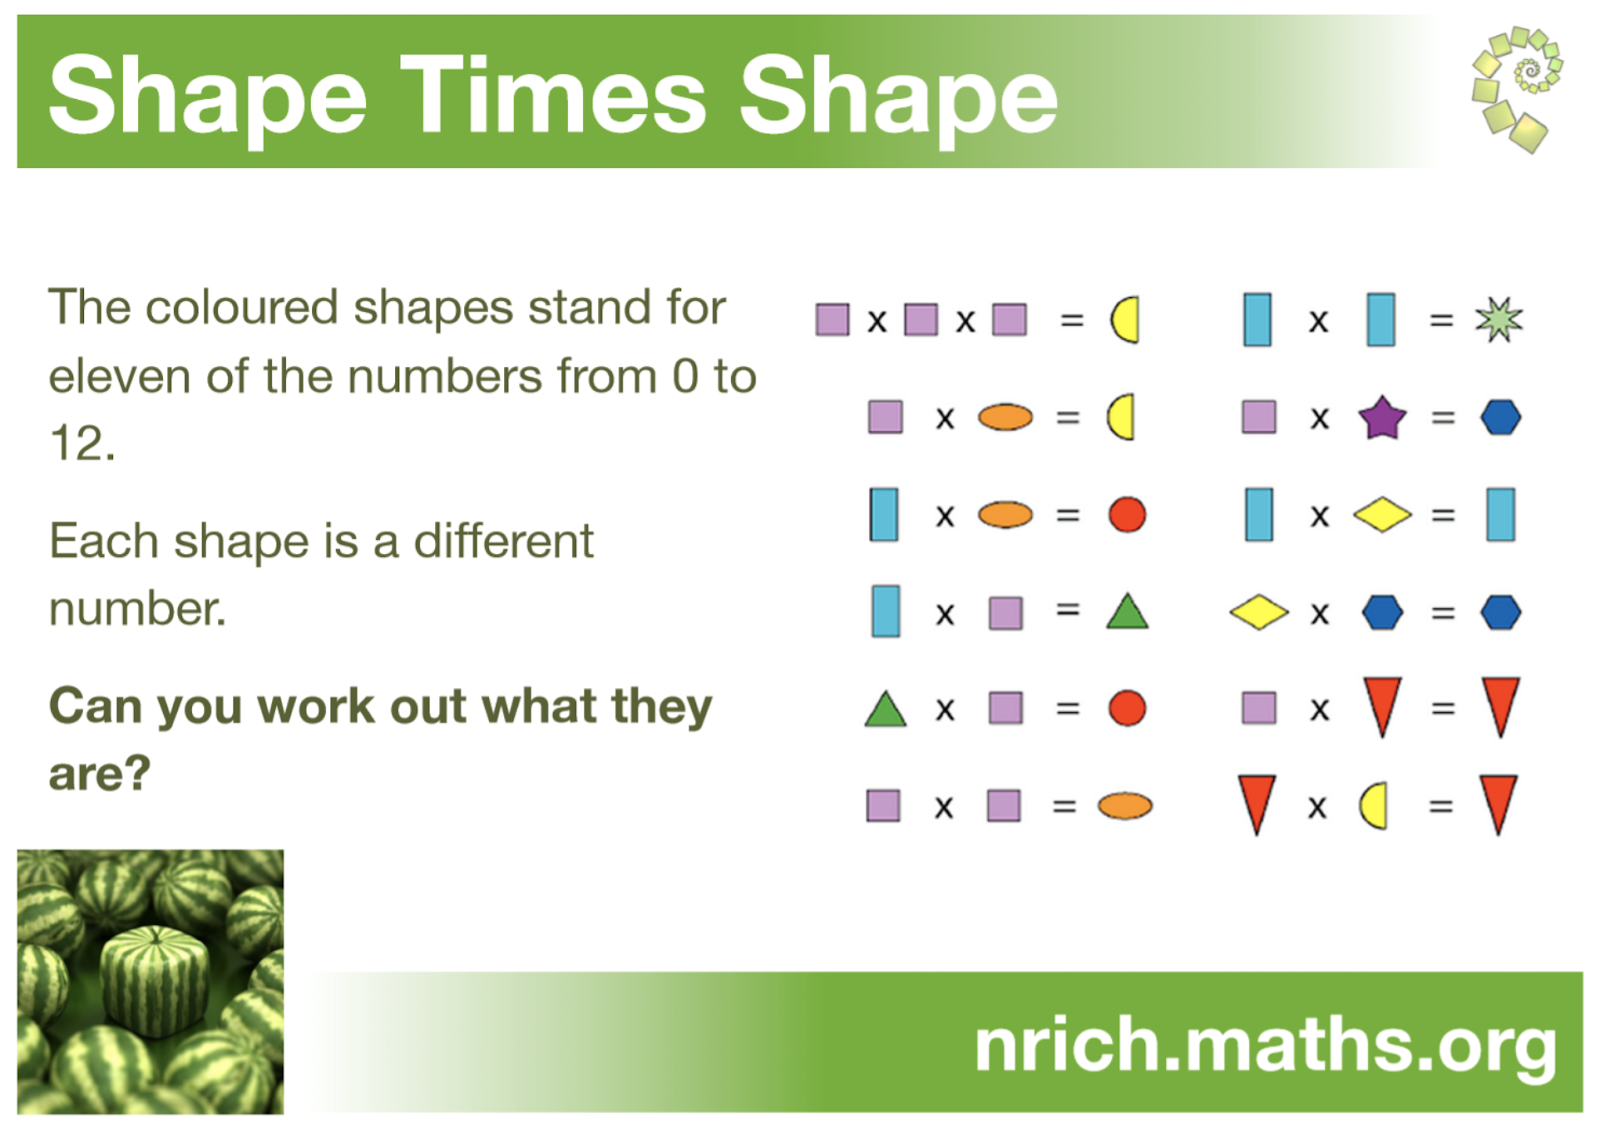 Shape times shape